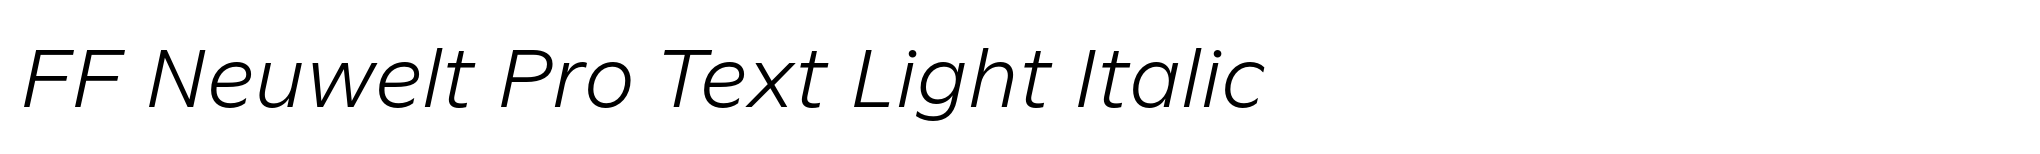 FF Neuwelt Pro Text Light Italic image